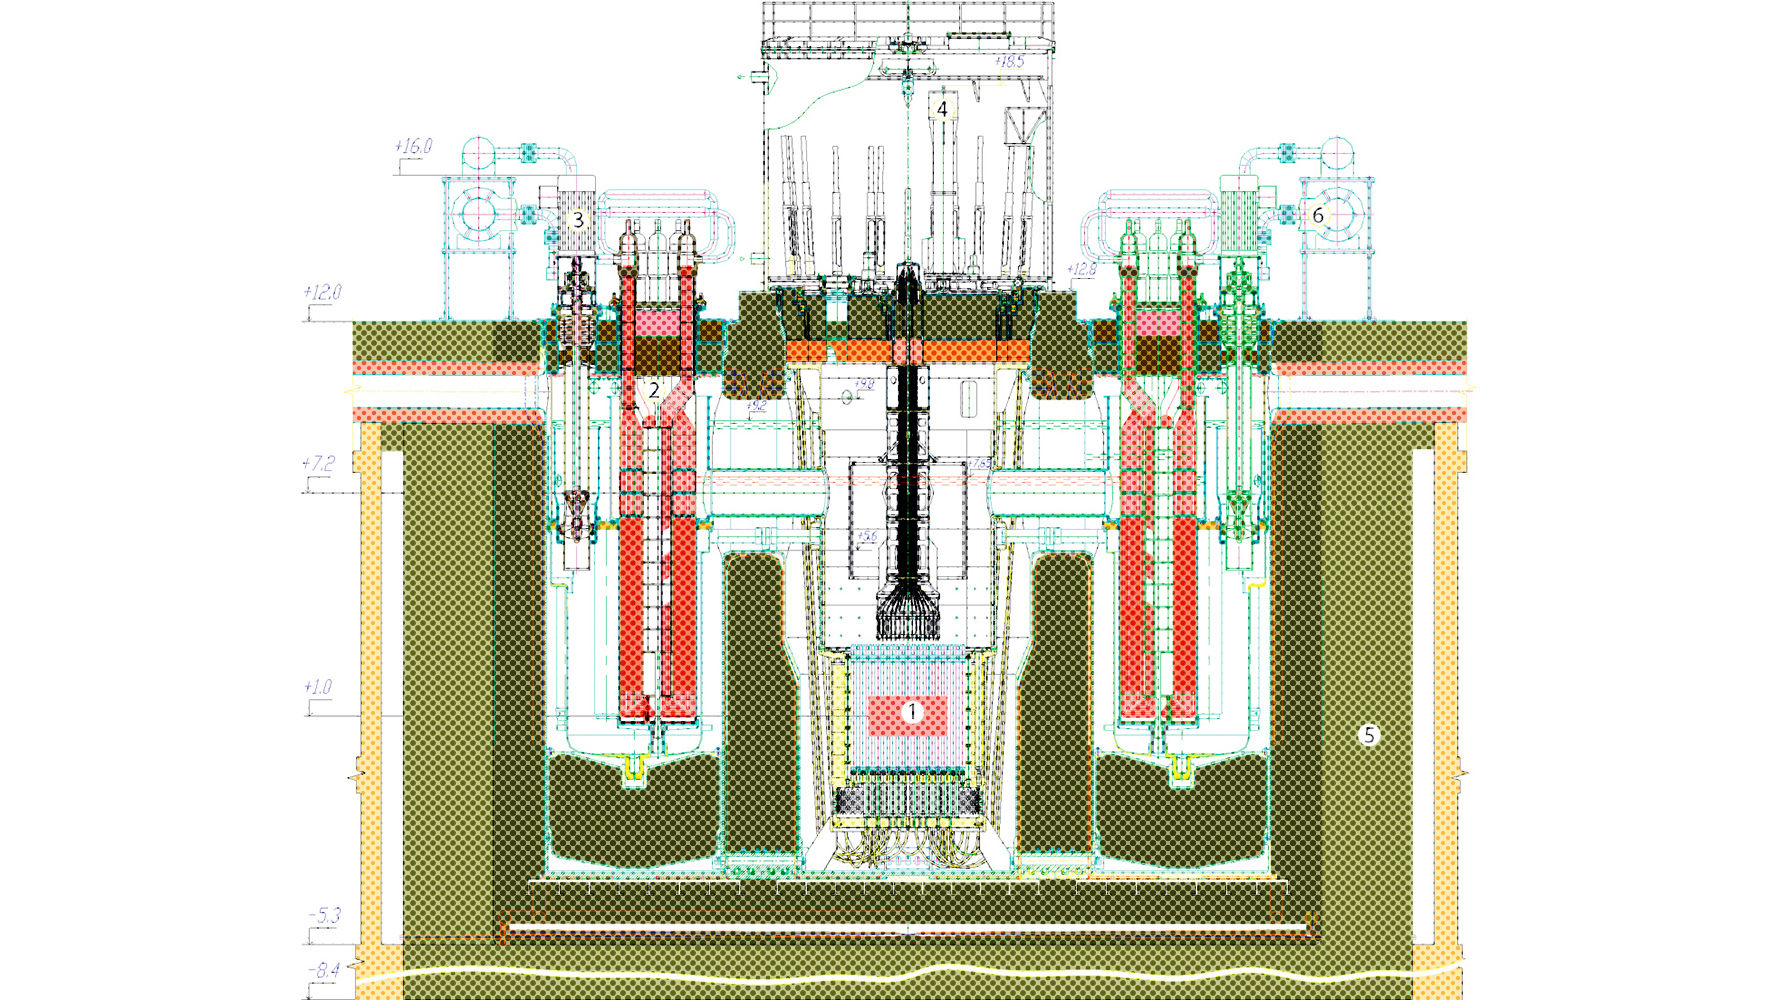 Первая в мире на быстрых нейтронах. Брест од 300. Брест реактор на быстрых нейтронах. БН-1200 реактор на быстрых нейтронах. Брест-од-300 вид сбоку реактор.